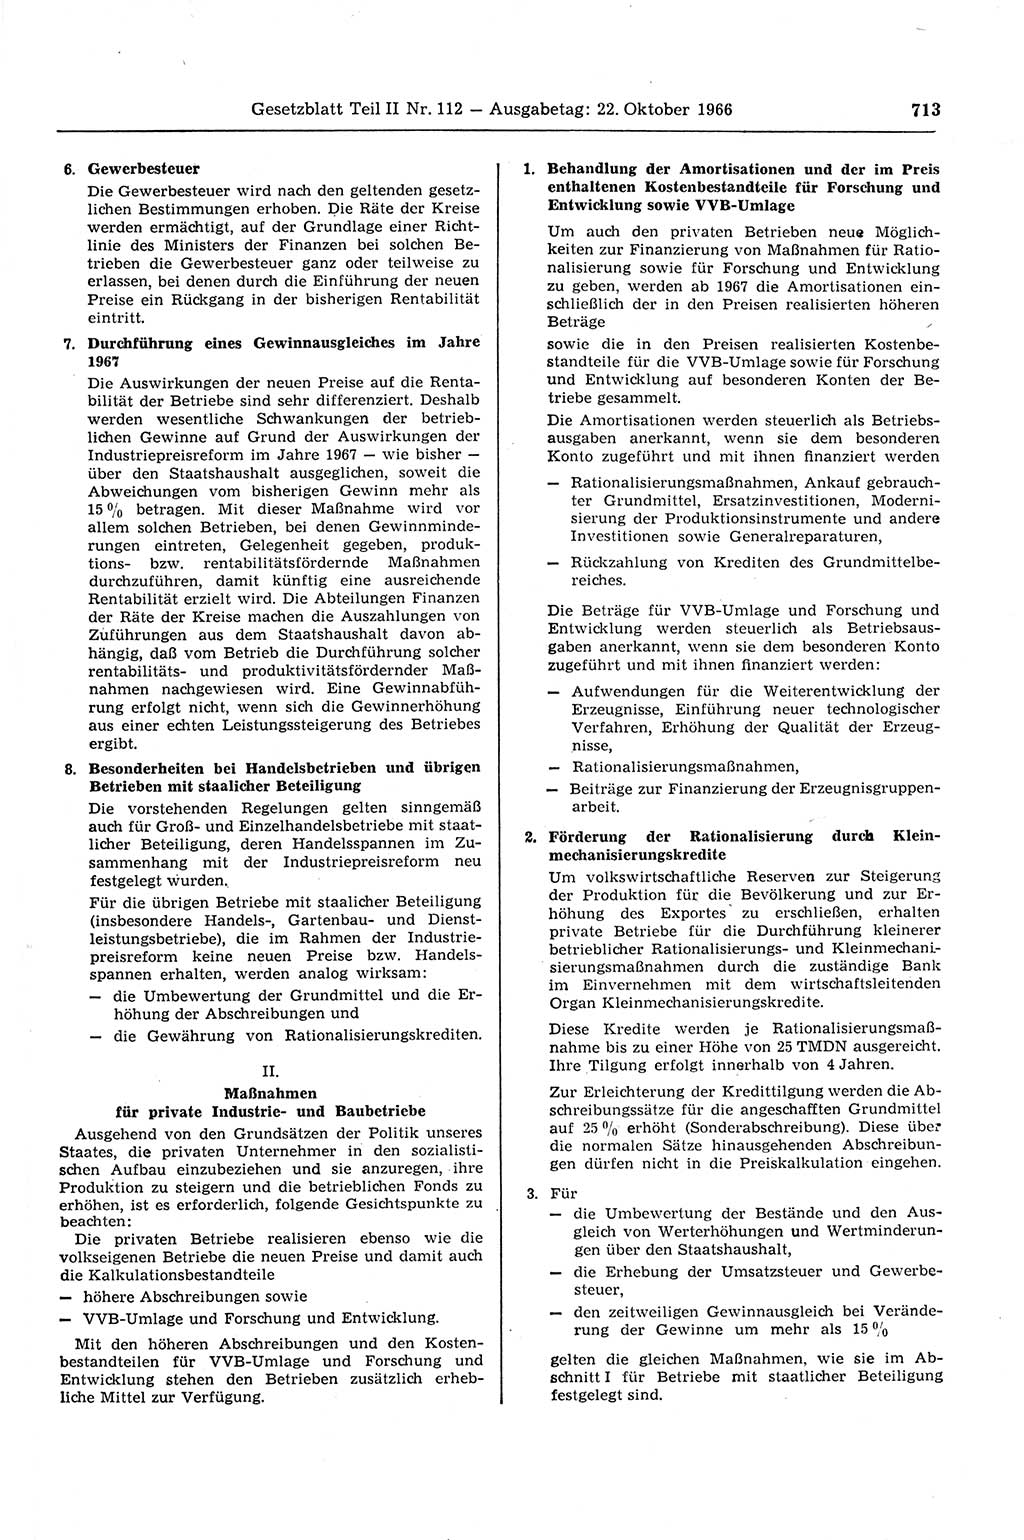 Gesetzblatt (GBl.) der Deutschen Demokratischen Republik (DDR) Teil ⅠⅠ 1966, Seite 713 (GBl. DDR ⅠⅠ 1966, S. 713)